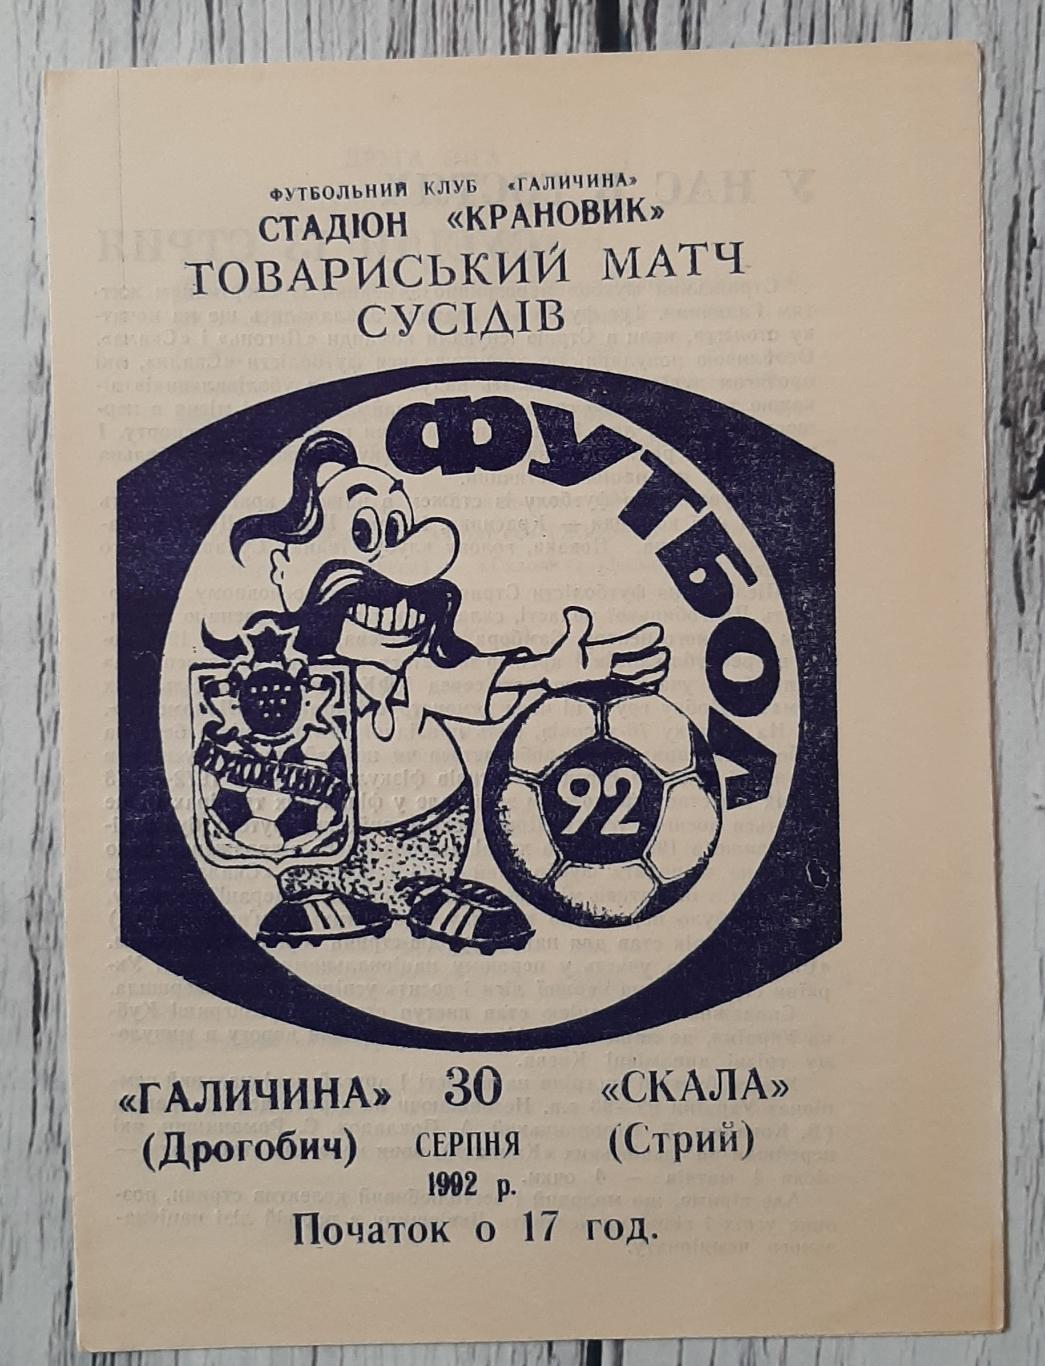 Галичина Дрогобич - Скала Стрий /30.08.1992/. ТМ